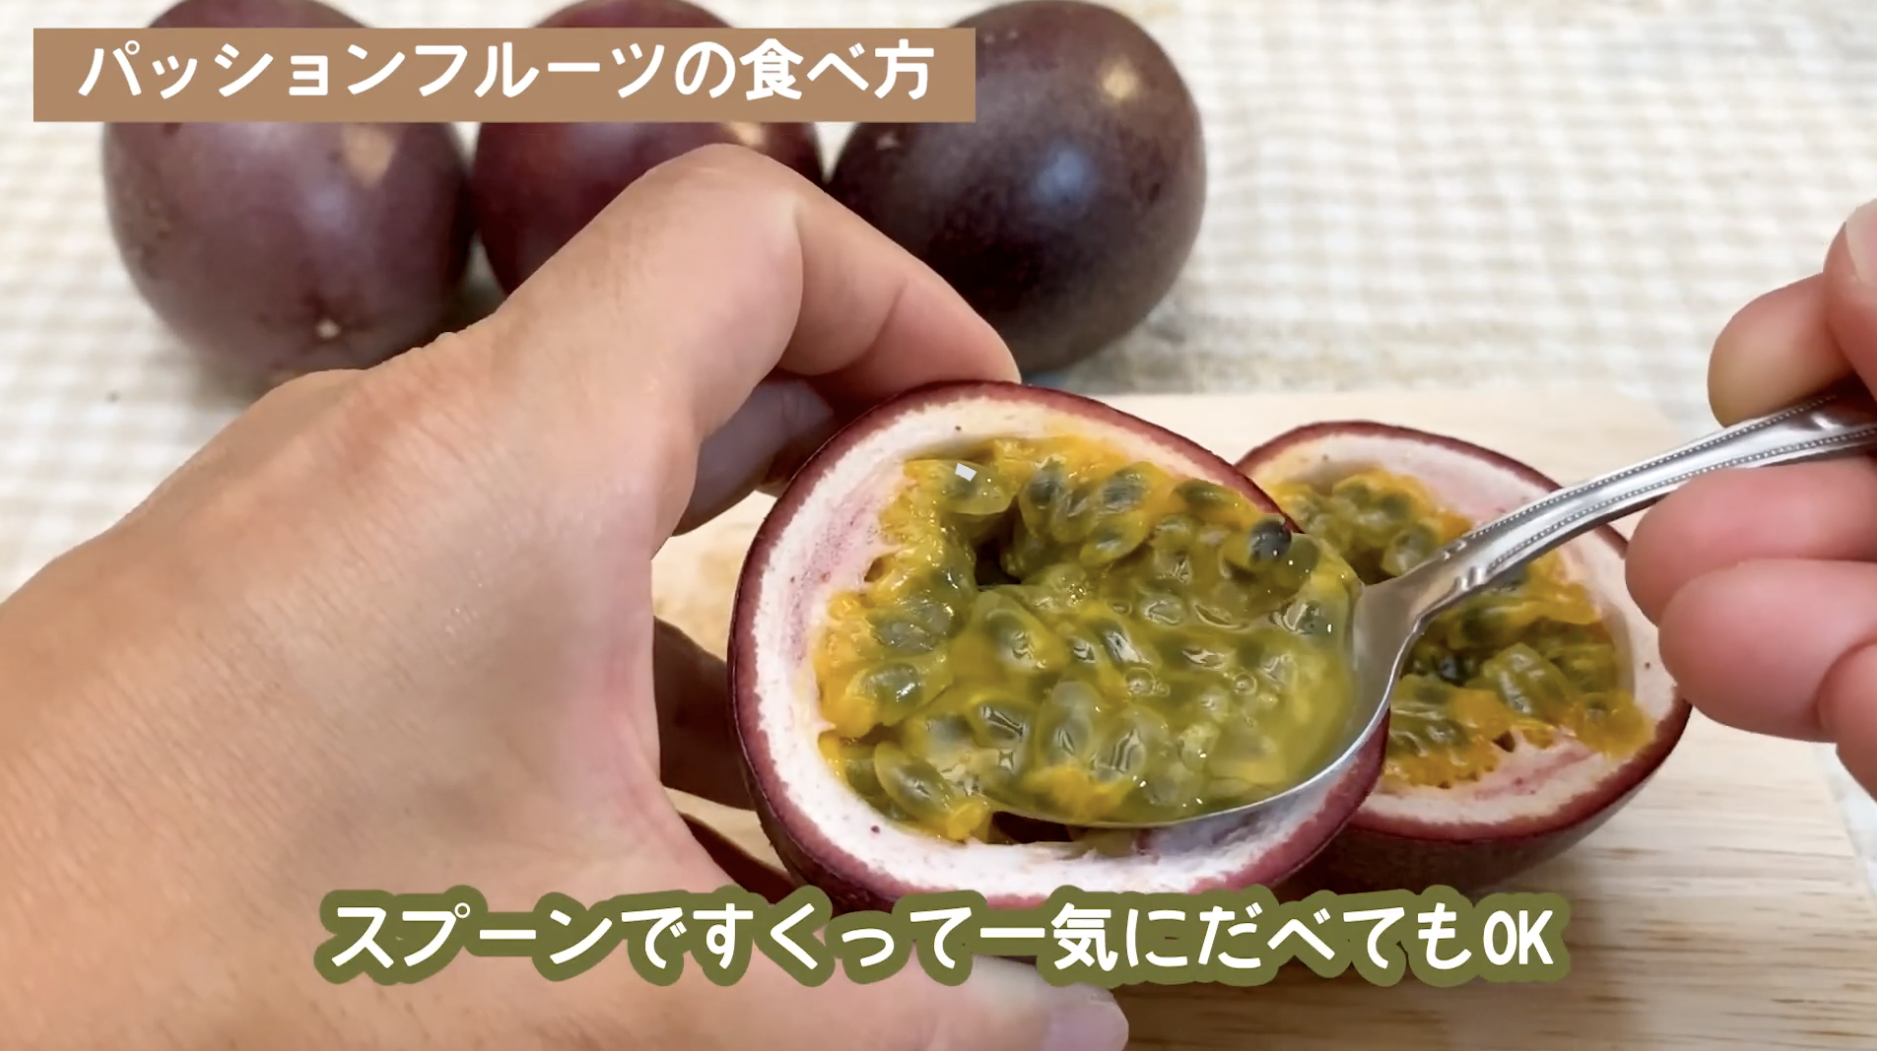 パッションフルーツ 美味しい食べ方 お取り寄せ 通販 安いお店 食べ方 栄養など徹底調査 なるくろの沖縄移住 Blog Vlog